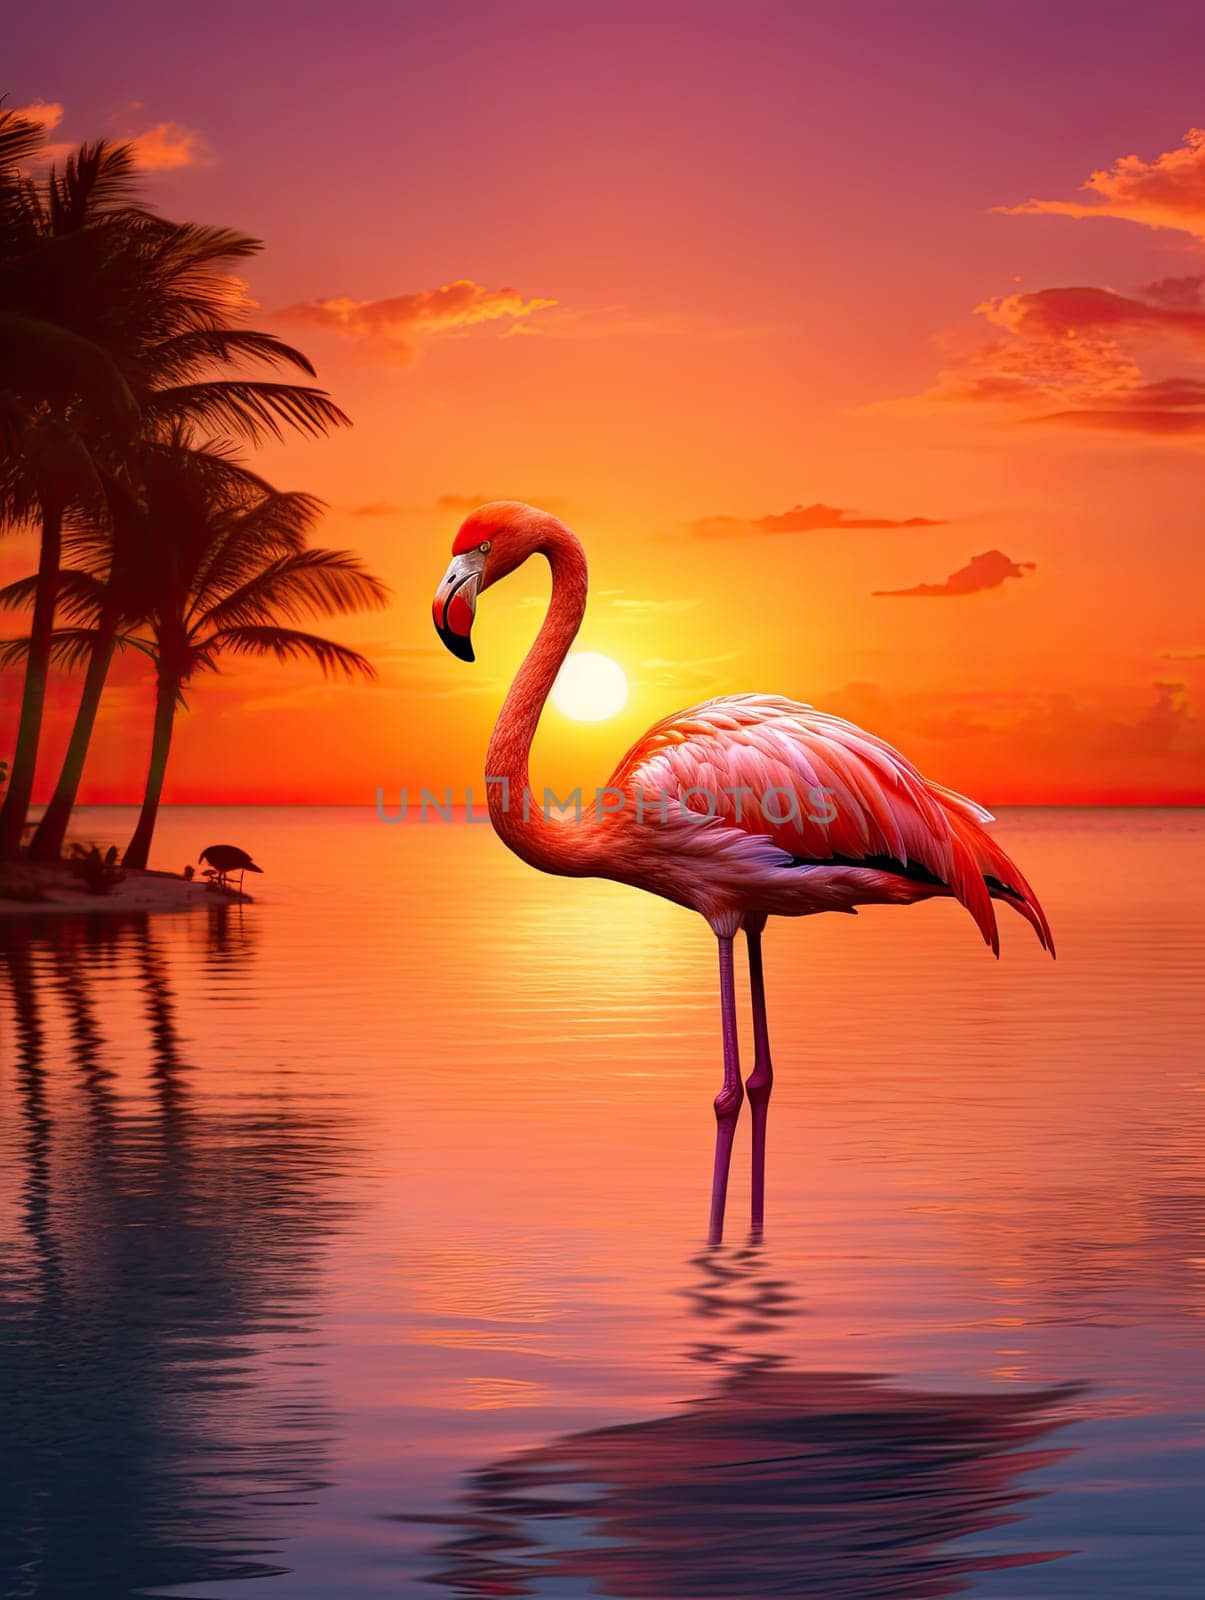 Beautiful pink flamingo in lake with reflection on beautiful sunset background. AI by AnatoliiFoto